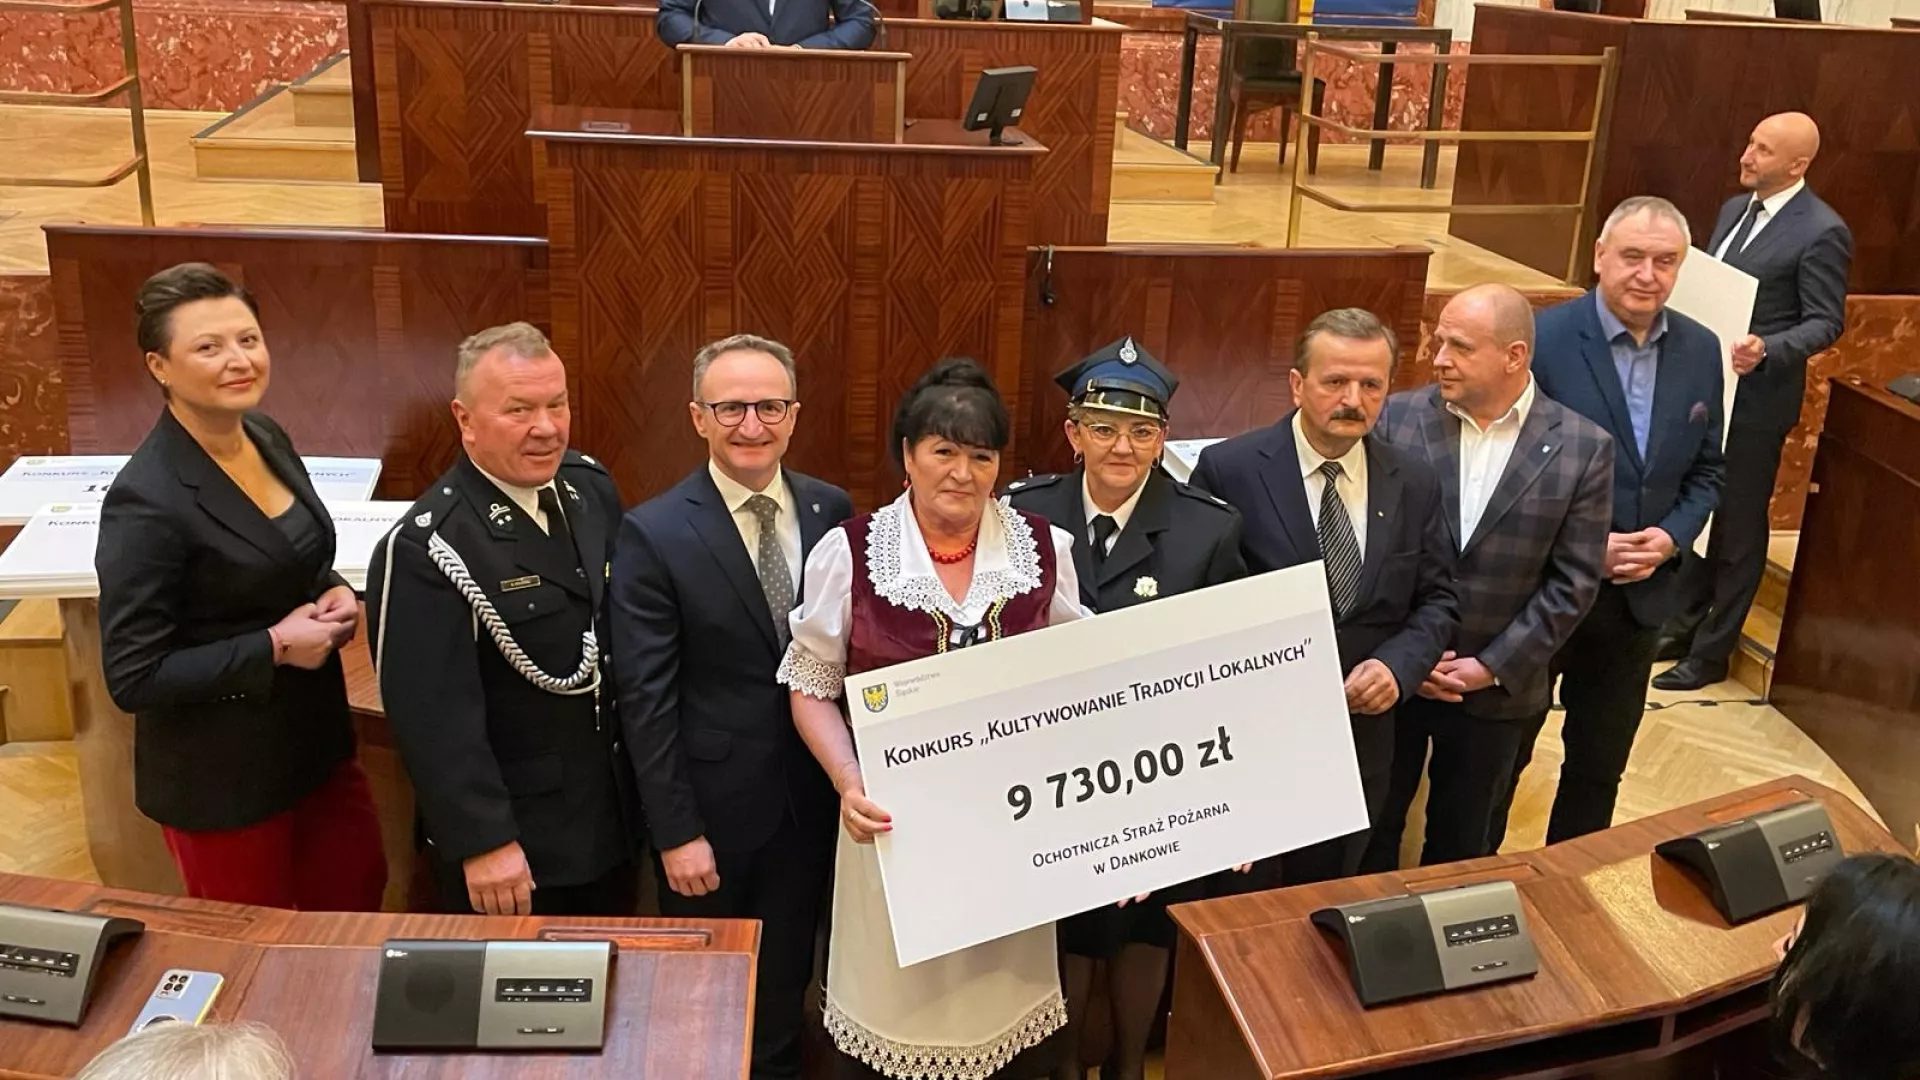 Przedstawiciele OSP Danków i KGW Danków odbierają symboliczny czek poświadczający uzyskanie dotacji w marszałkowskim konkursie.